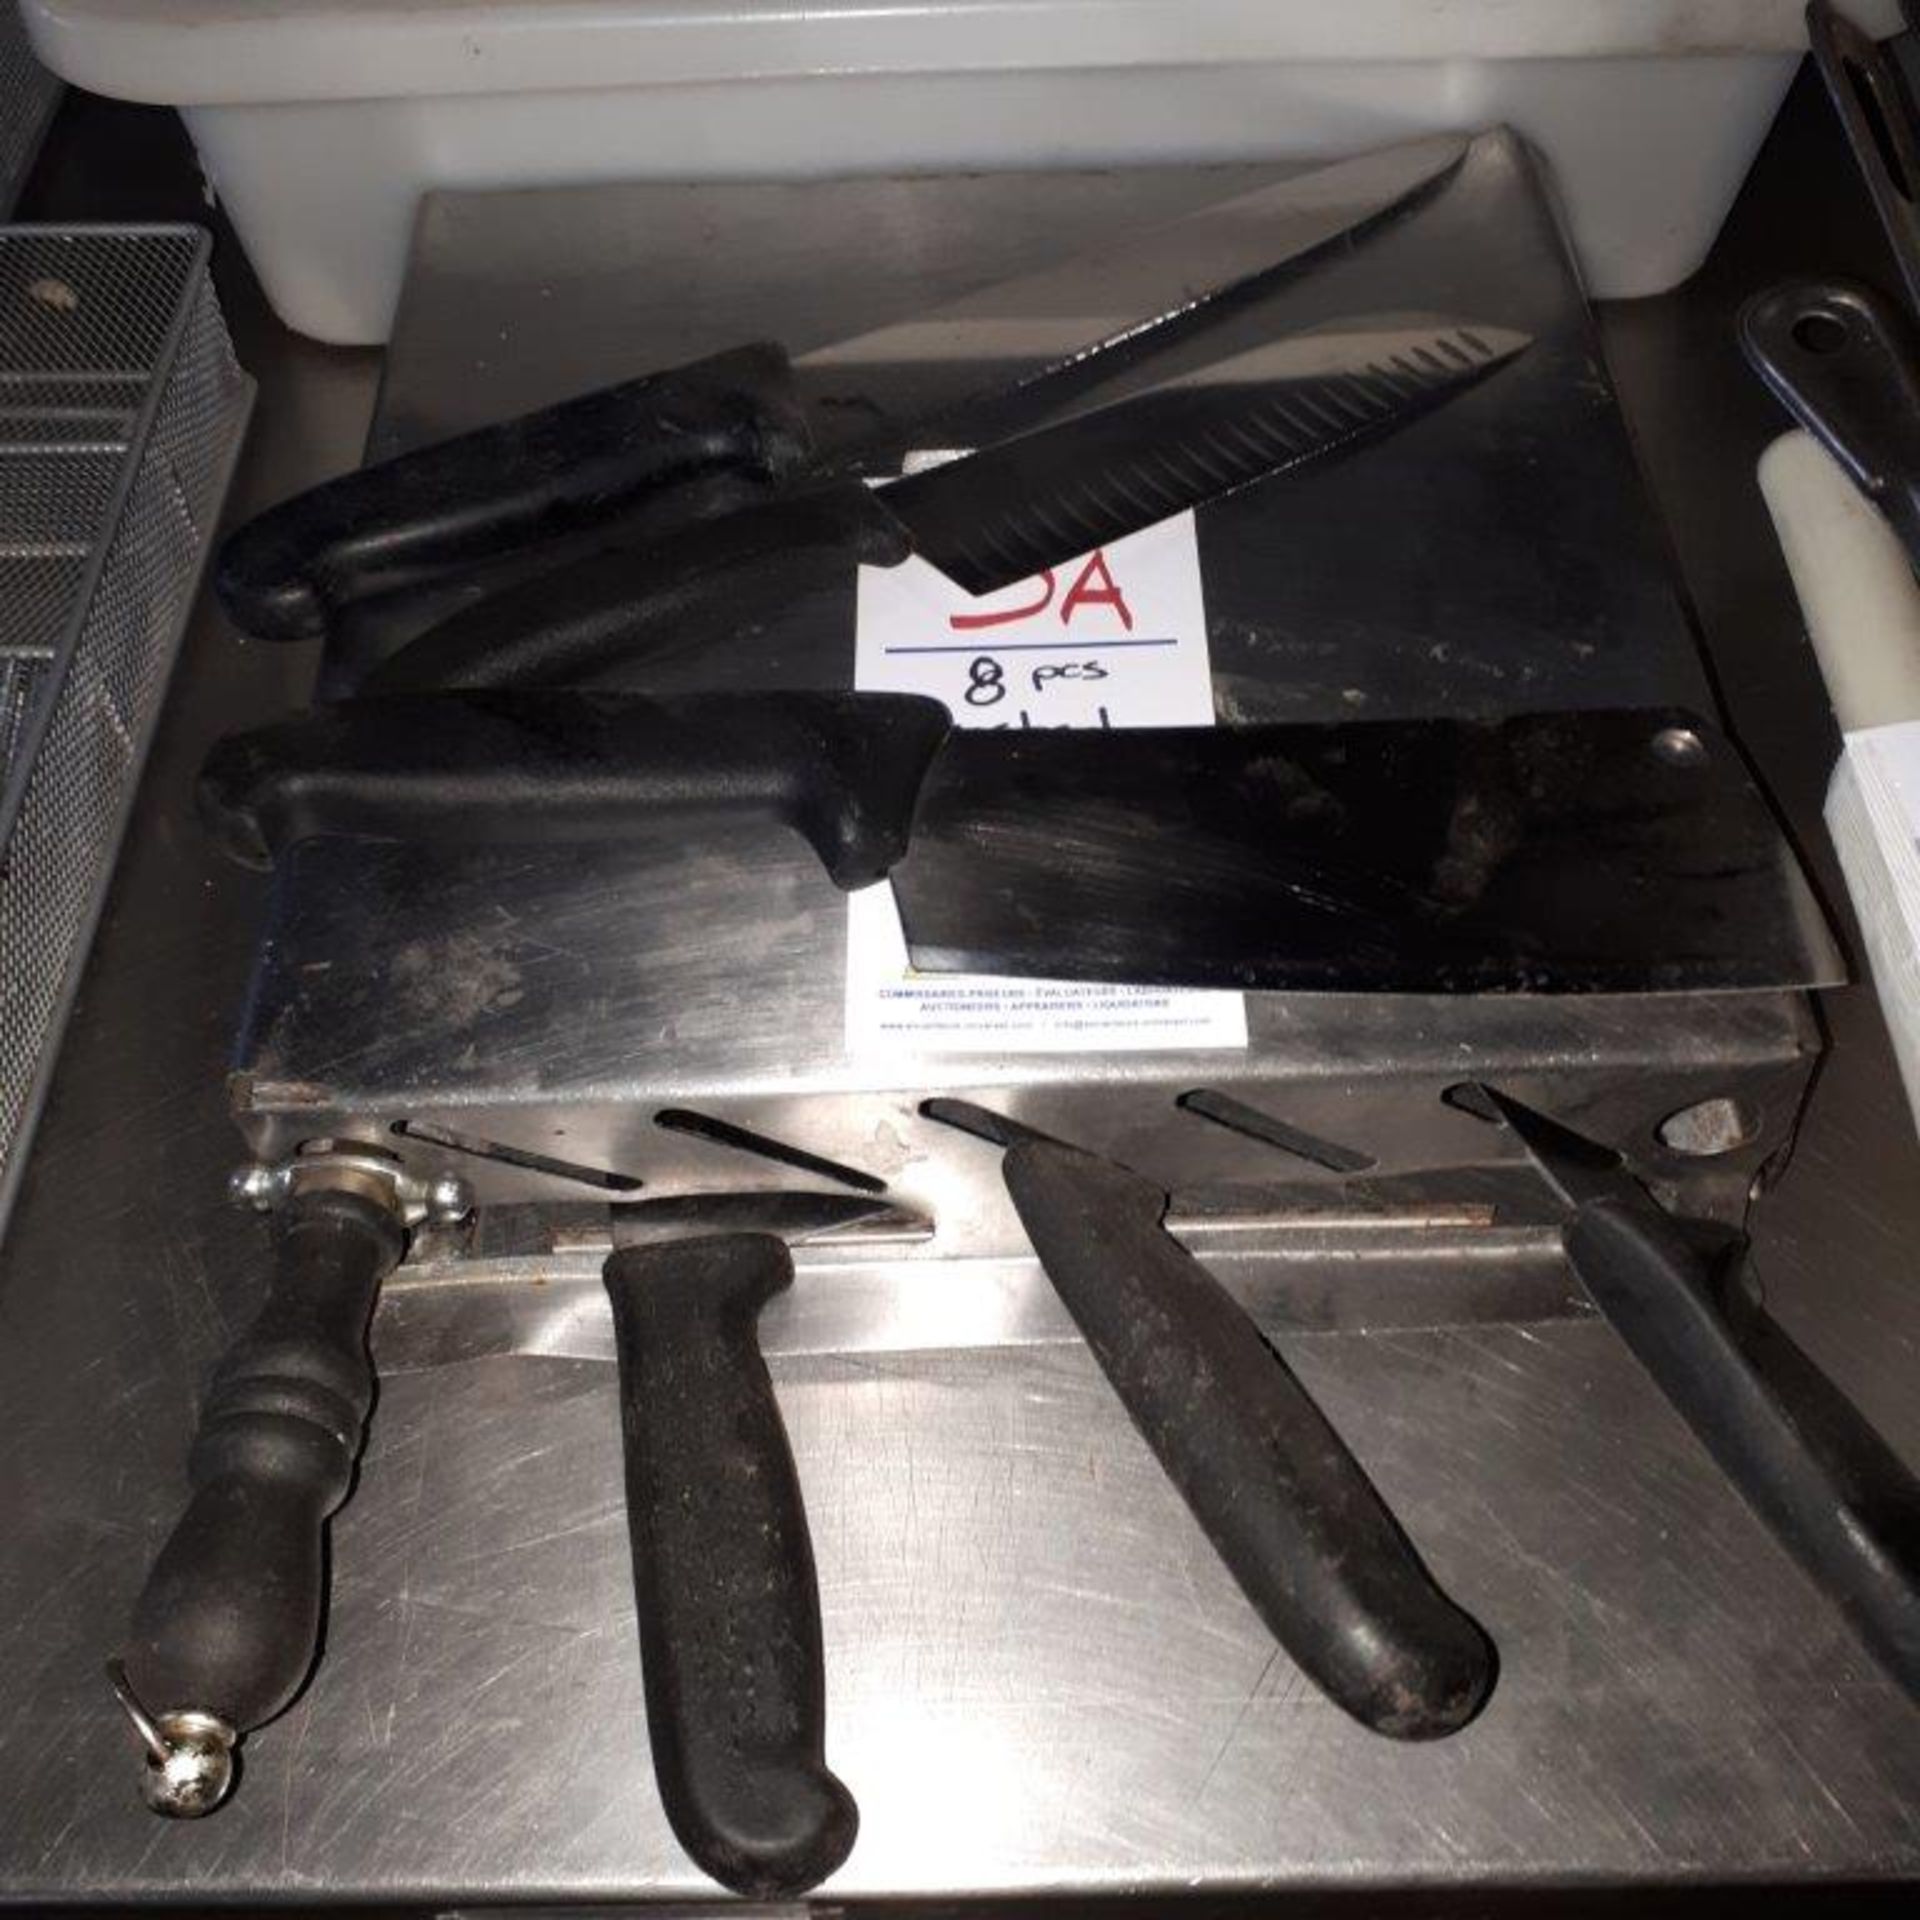 Assorted knives & holder